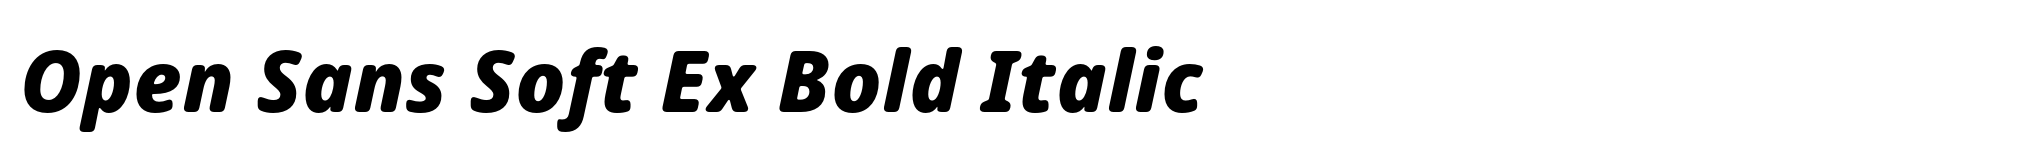 Open Sans Soft Ex Bold Italic image